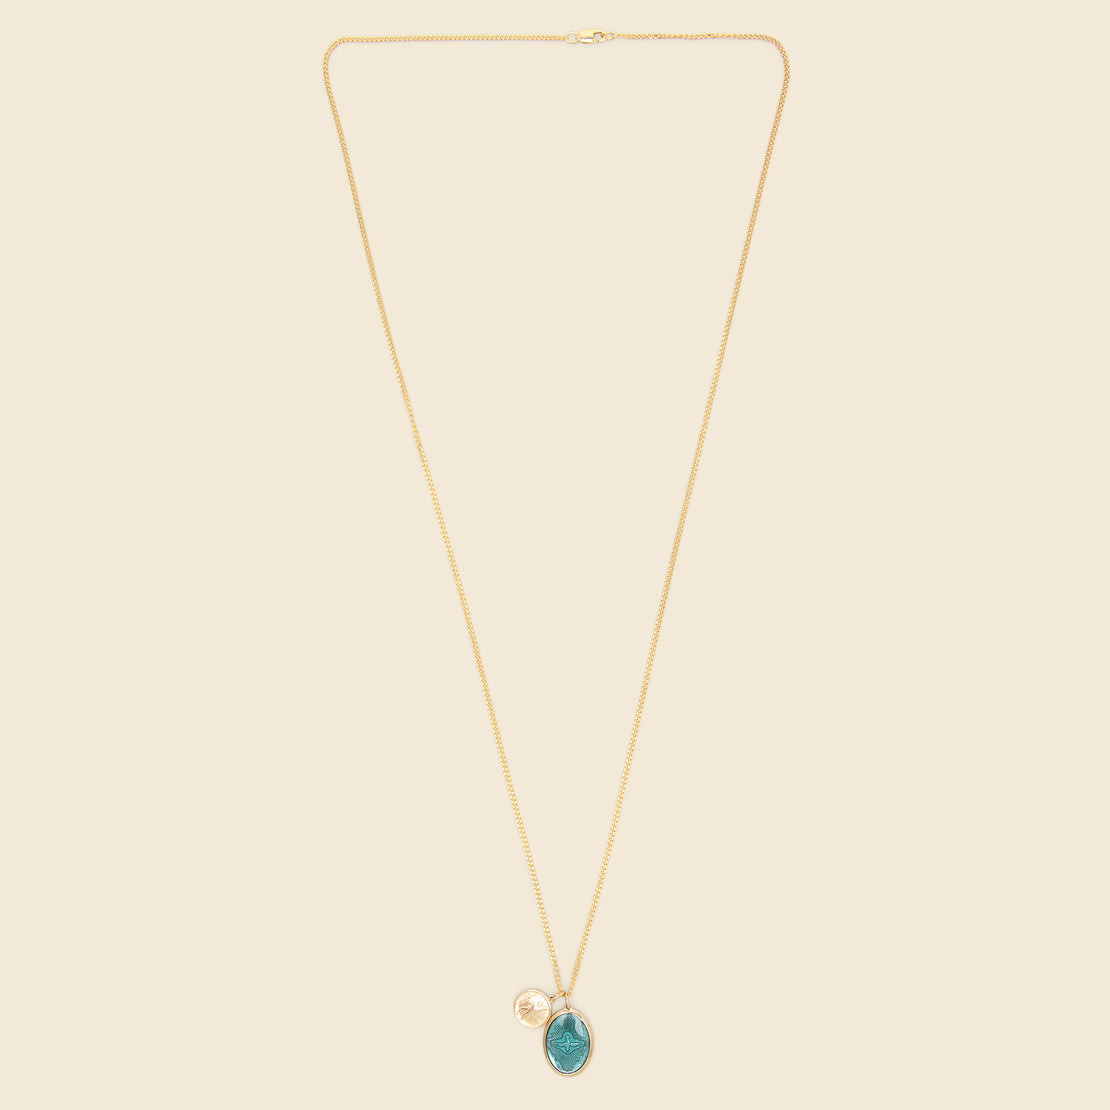 Mini Dove Pendant Necklace - Teal Enamel/Gold Vermeil